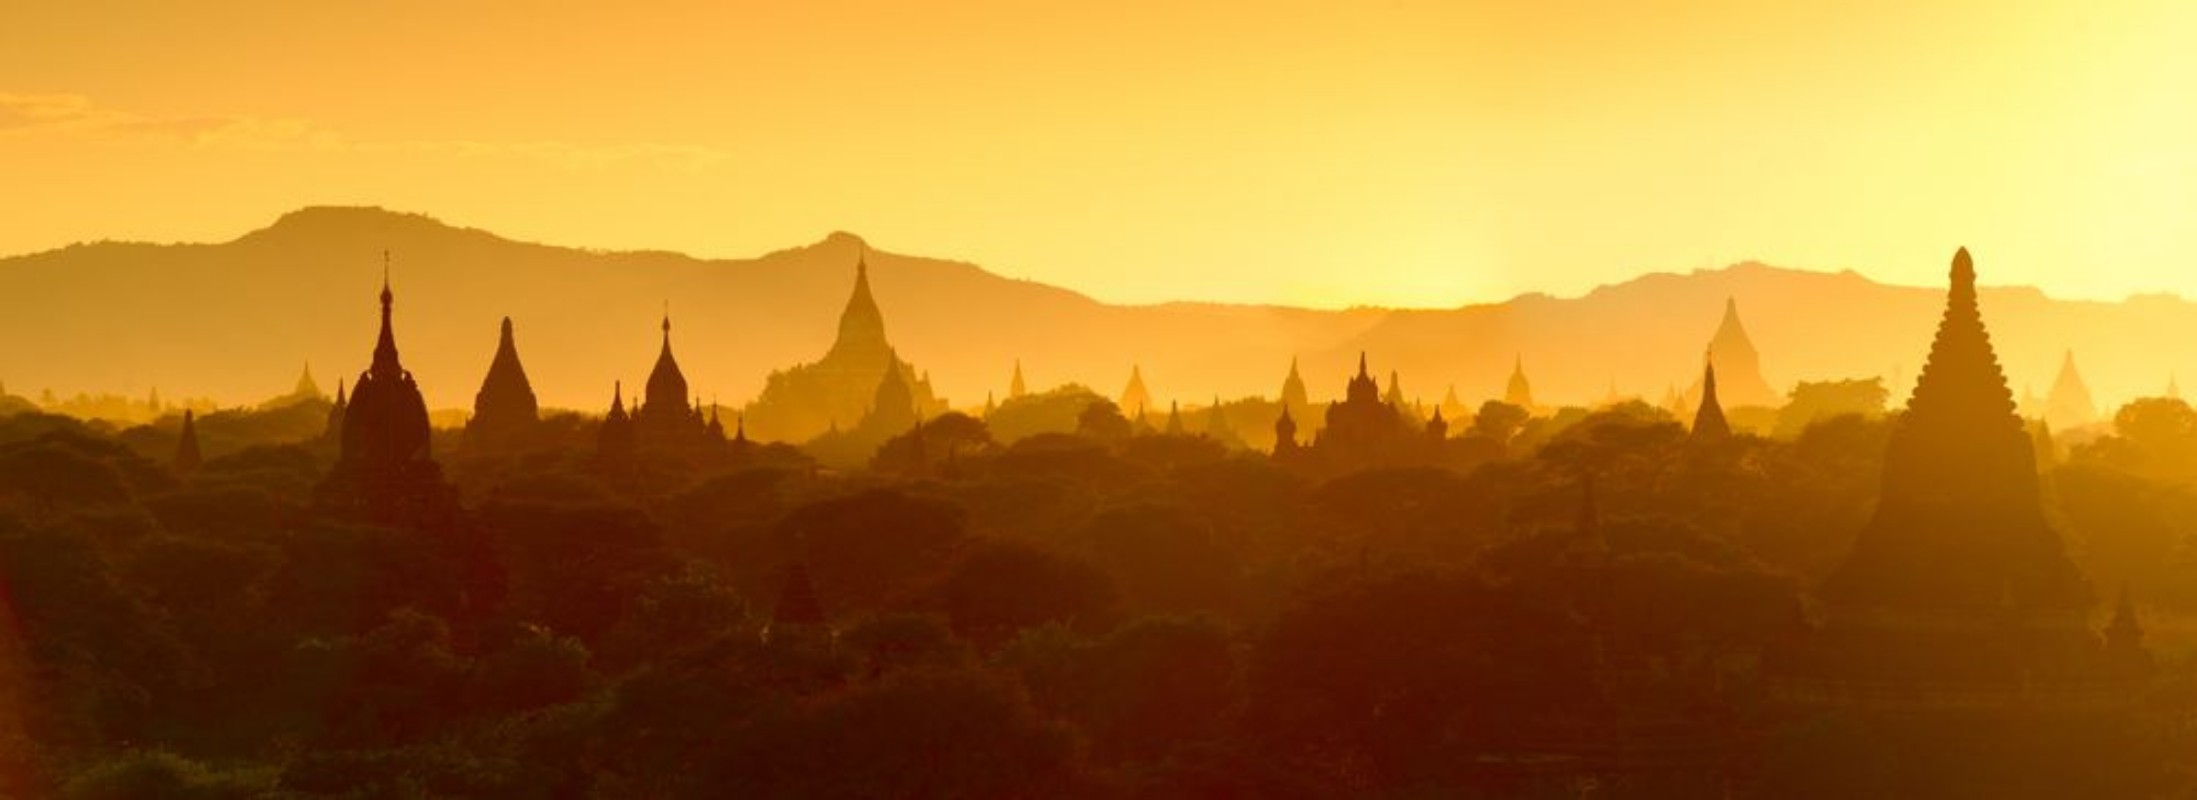 Afbeeldingen van Temples in Bagan